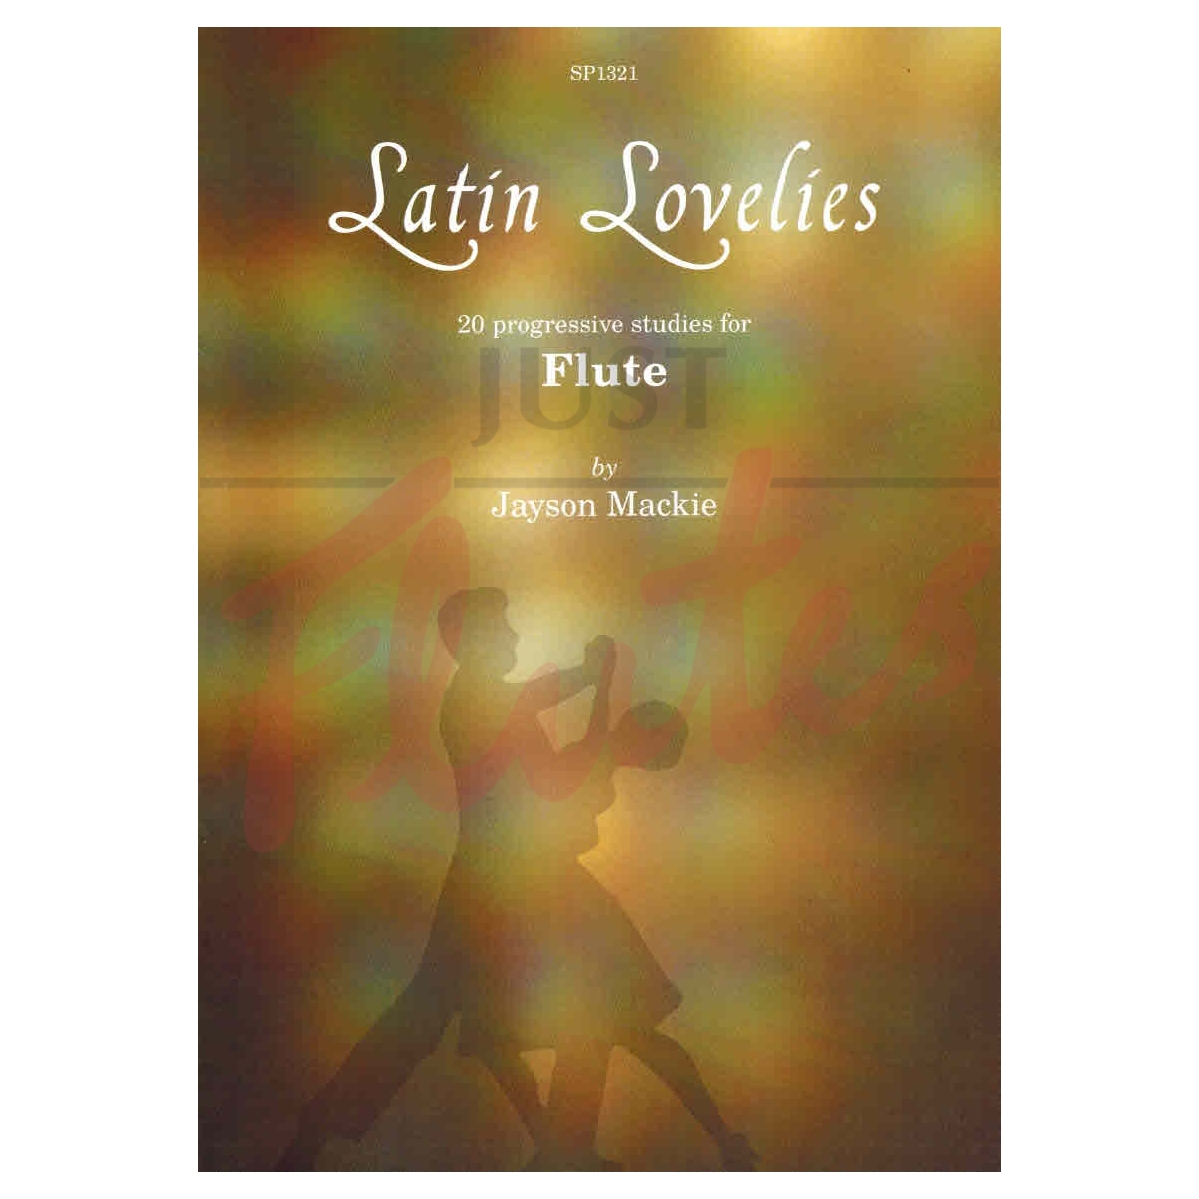 Latin Lovelies - 20 Progressive Studies for Flute